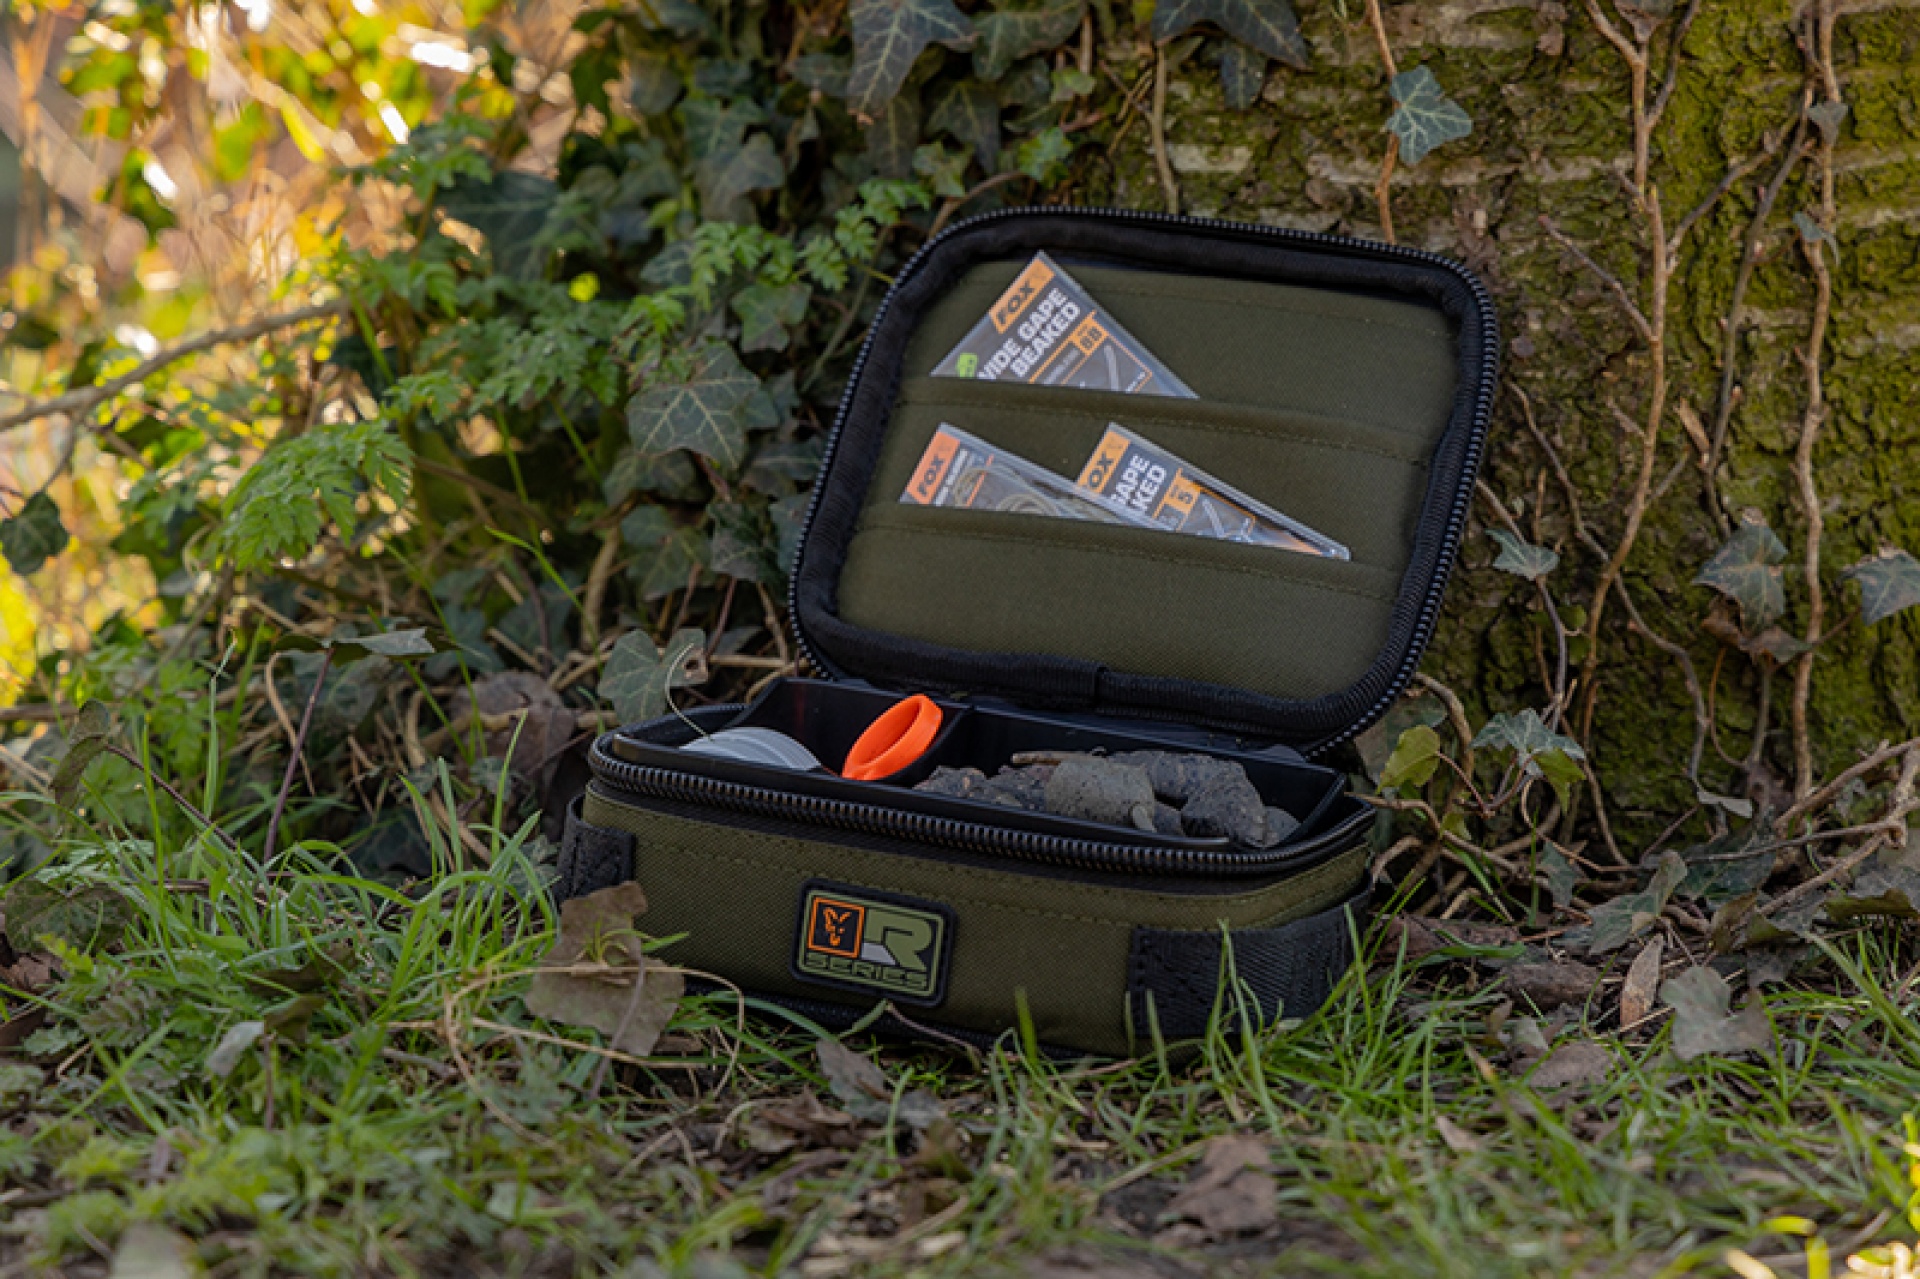 Fox R-Series Rigid Lead & Bits Compact Bag